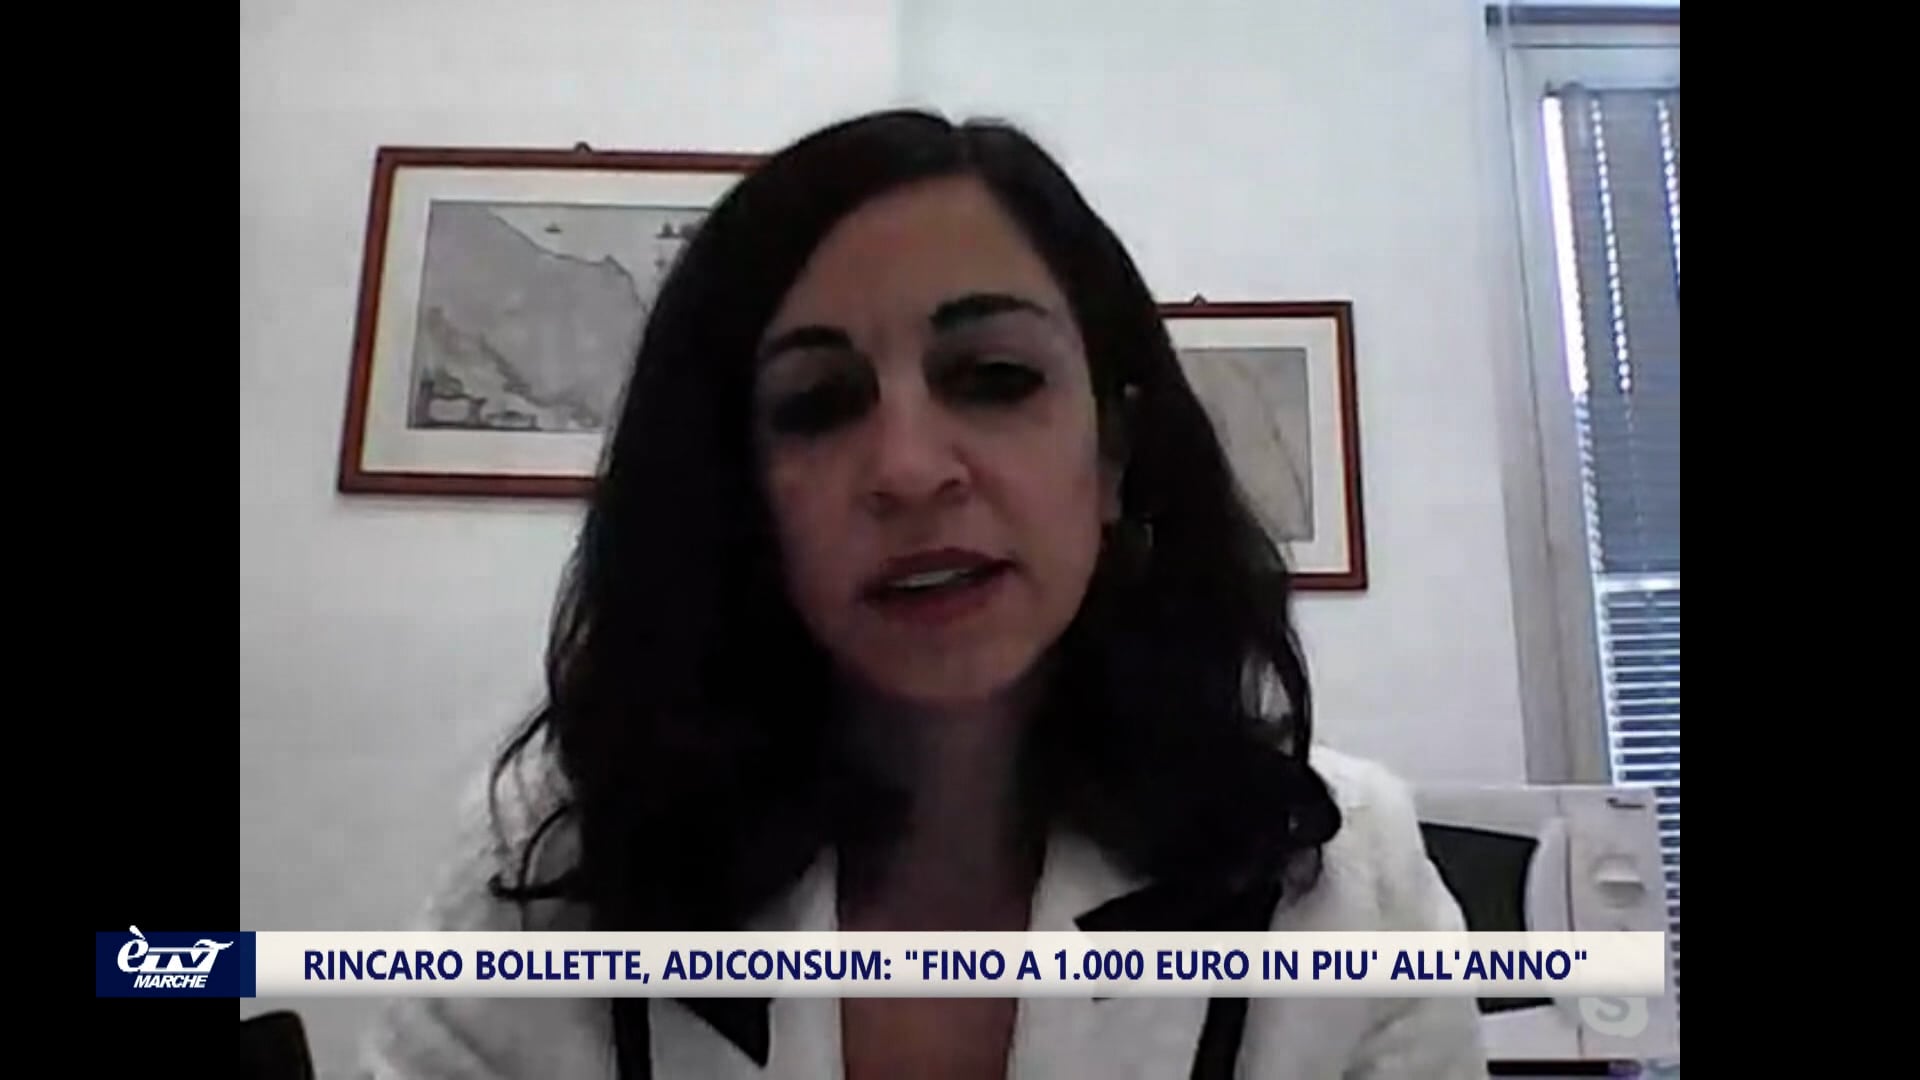 Bollette choc, rincari per le famiglie anche di 1000 euro all'anno - VIDEO